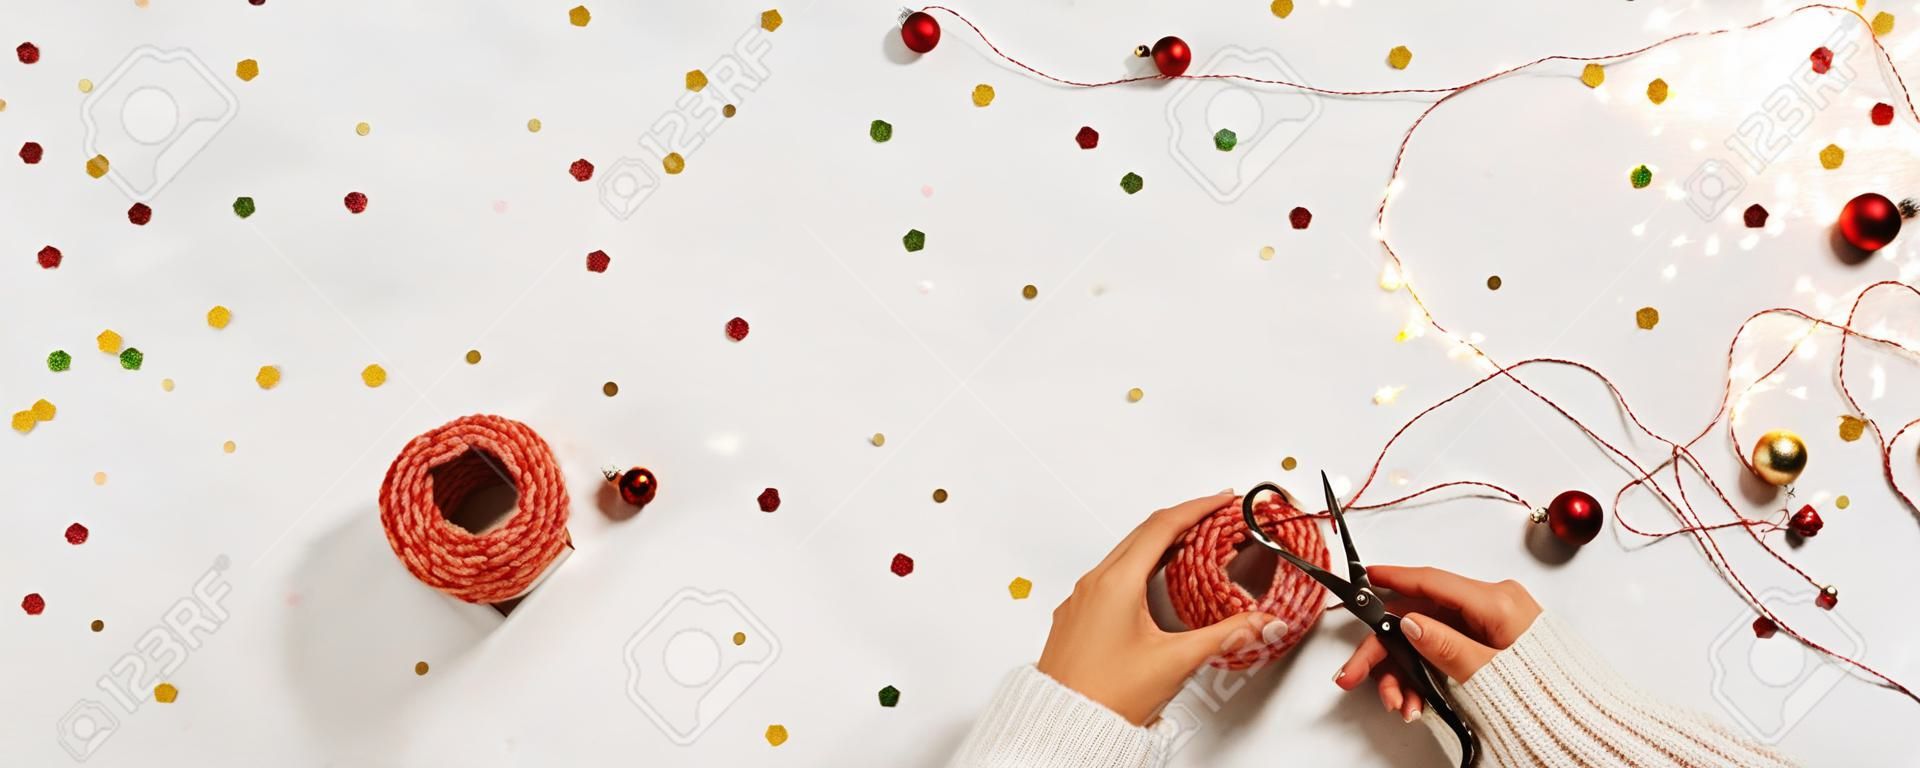 Frauenhände in einem Pullover packen eine Geschenkbox für das neue Jahr. Kreatives Weihnachtslayout auf weißem Hintergrund mit Konfetti und Platz für Text.